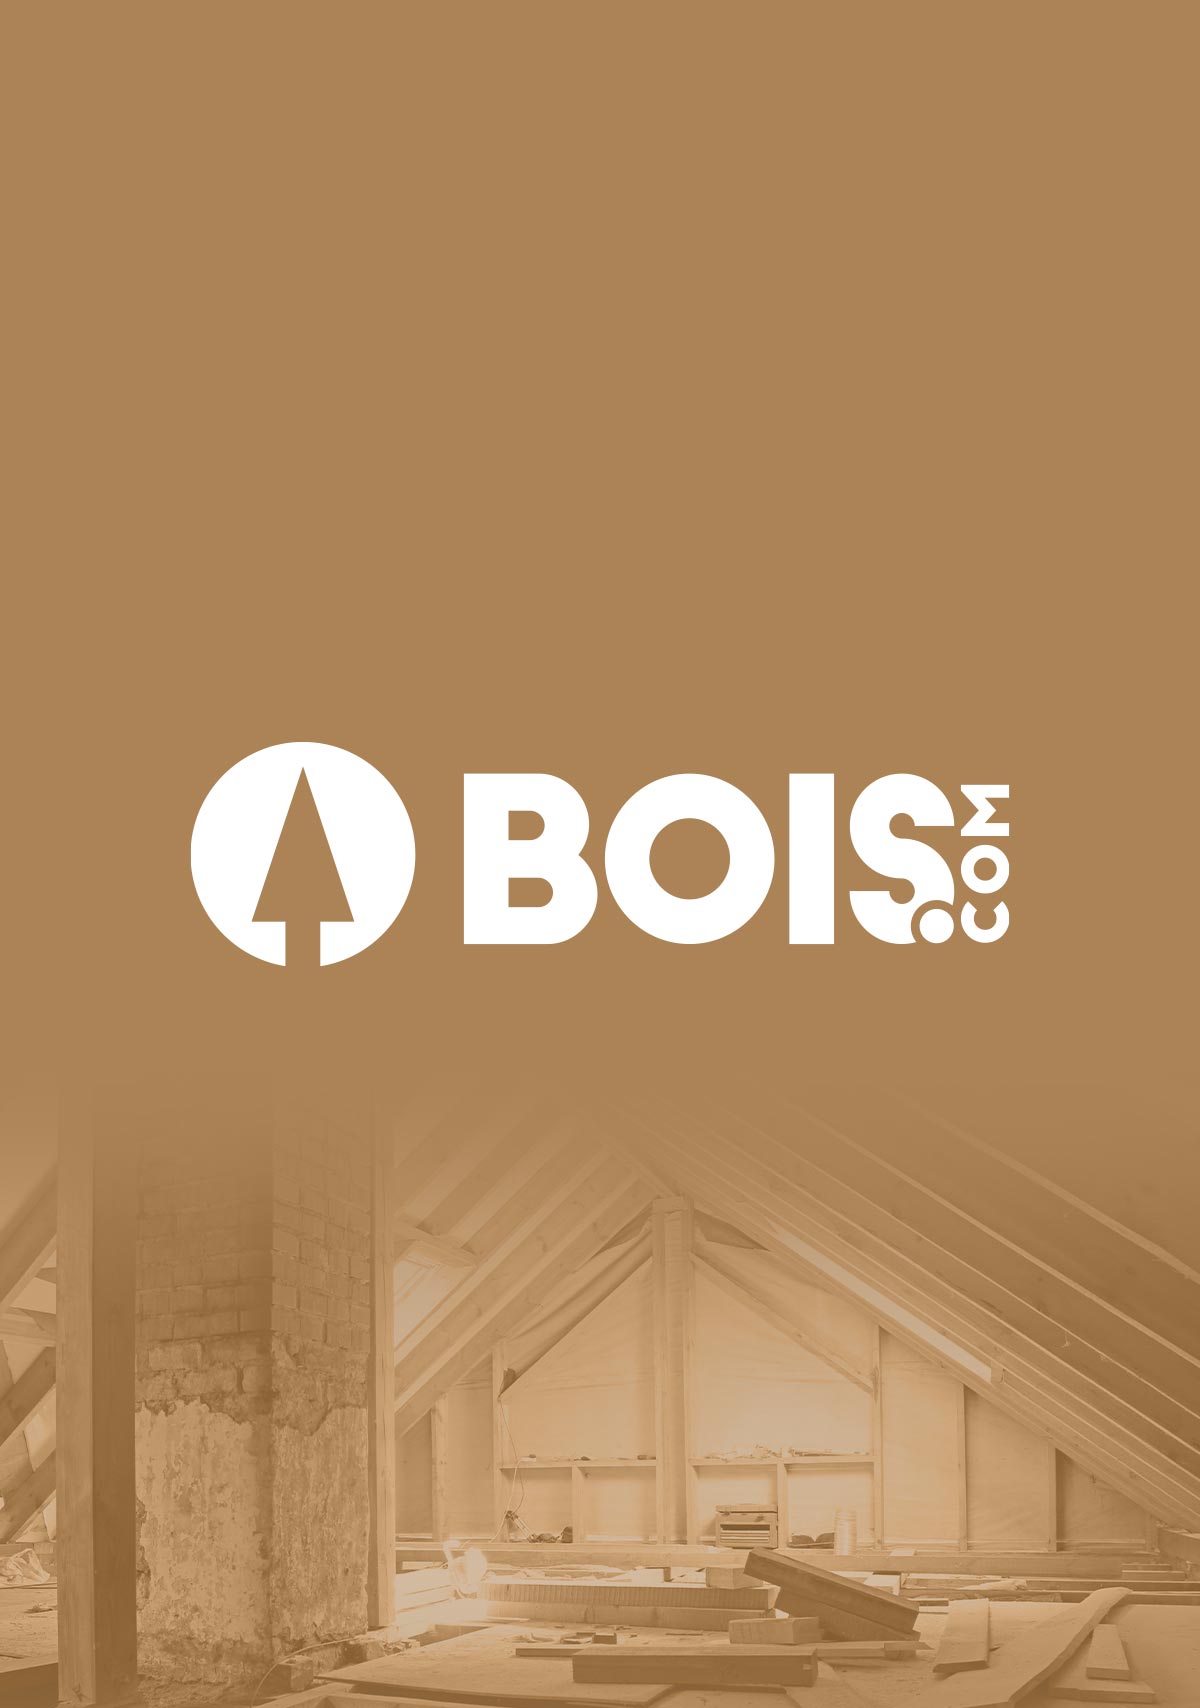 bois.com web design